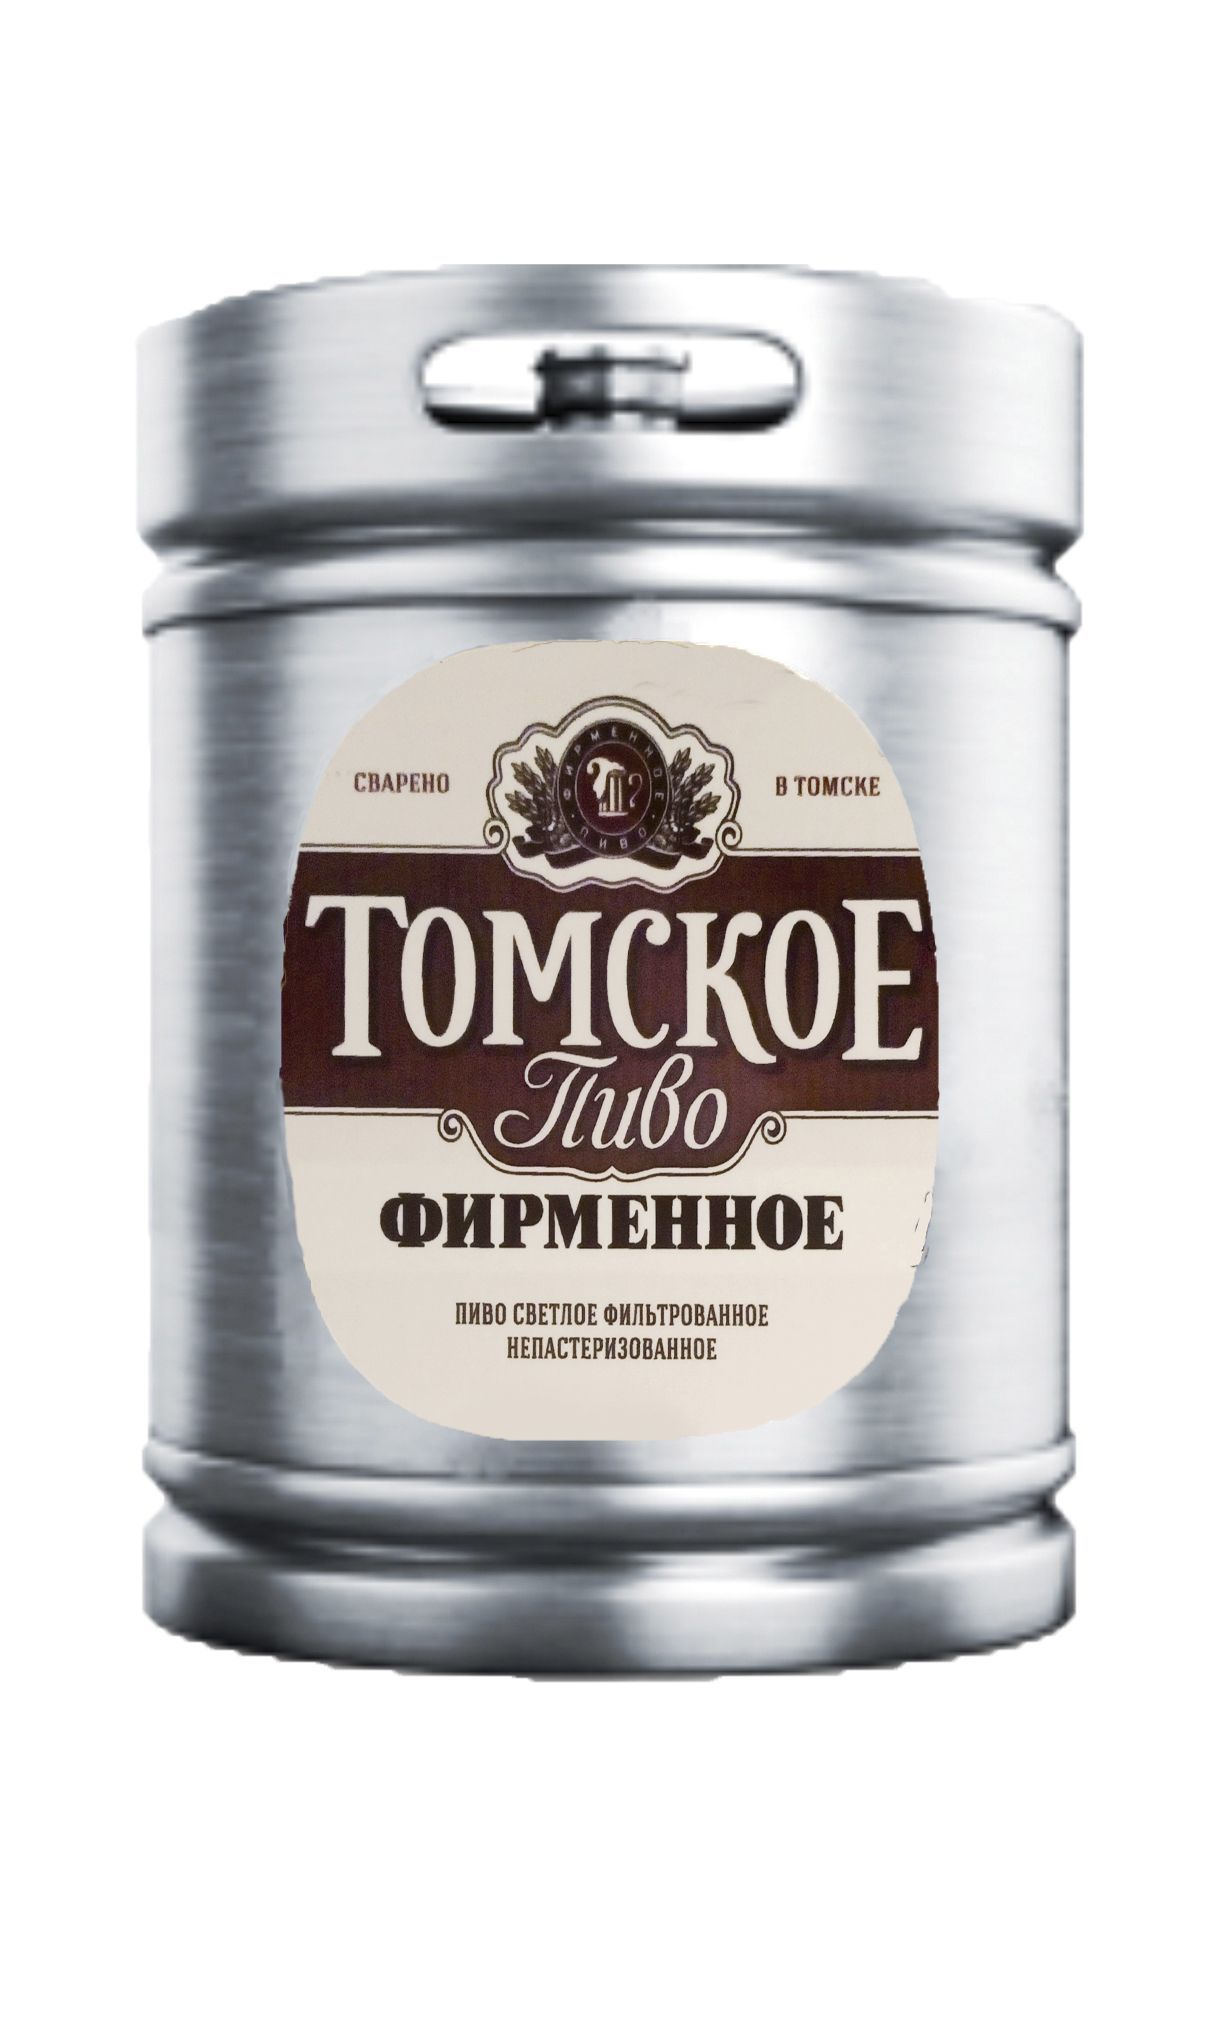 Пиво Томское фирменное св 4,0%